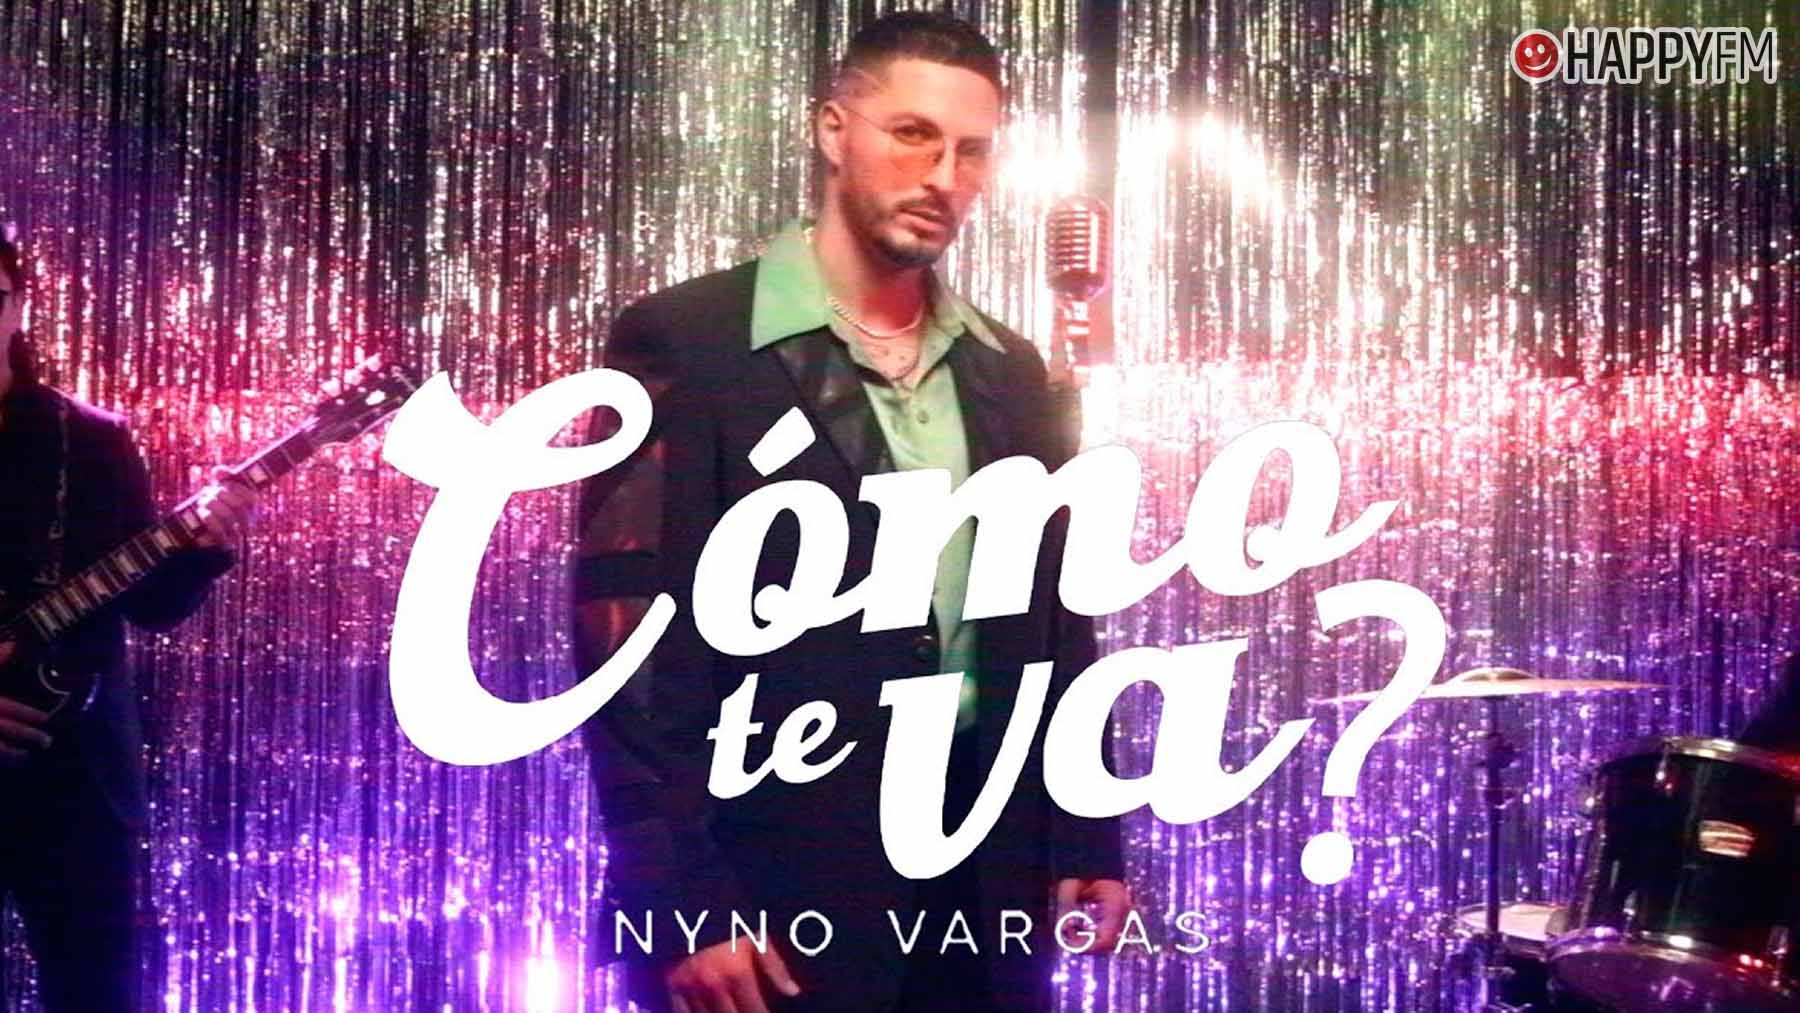 ‘Cómo te va?’, de Nyno Vargas: letra y vídeo